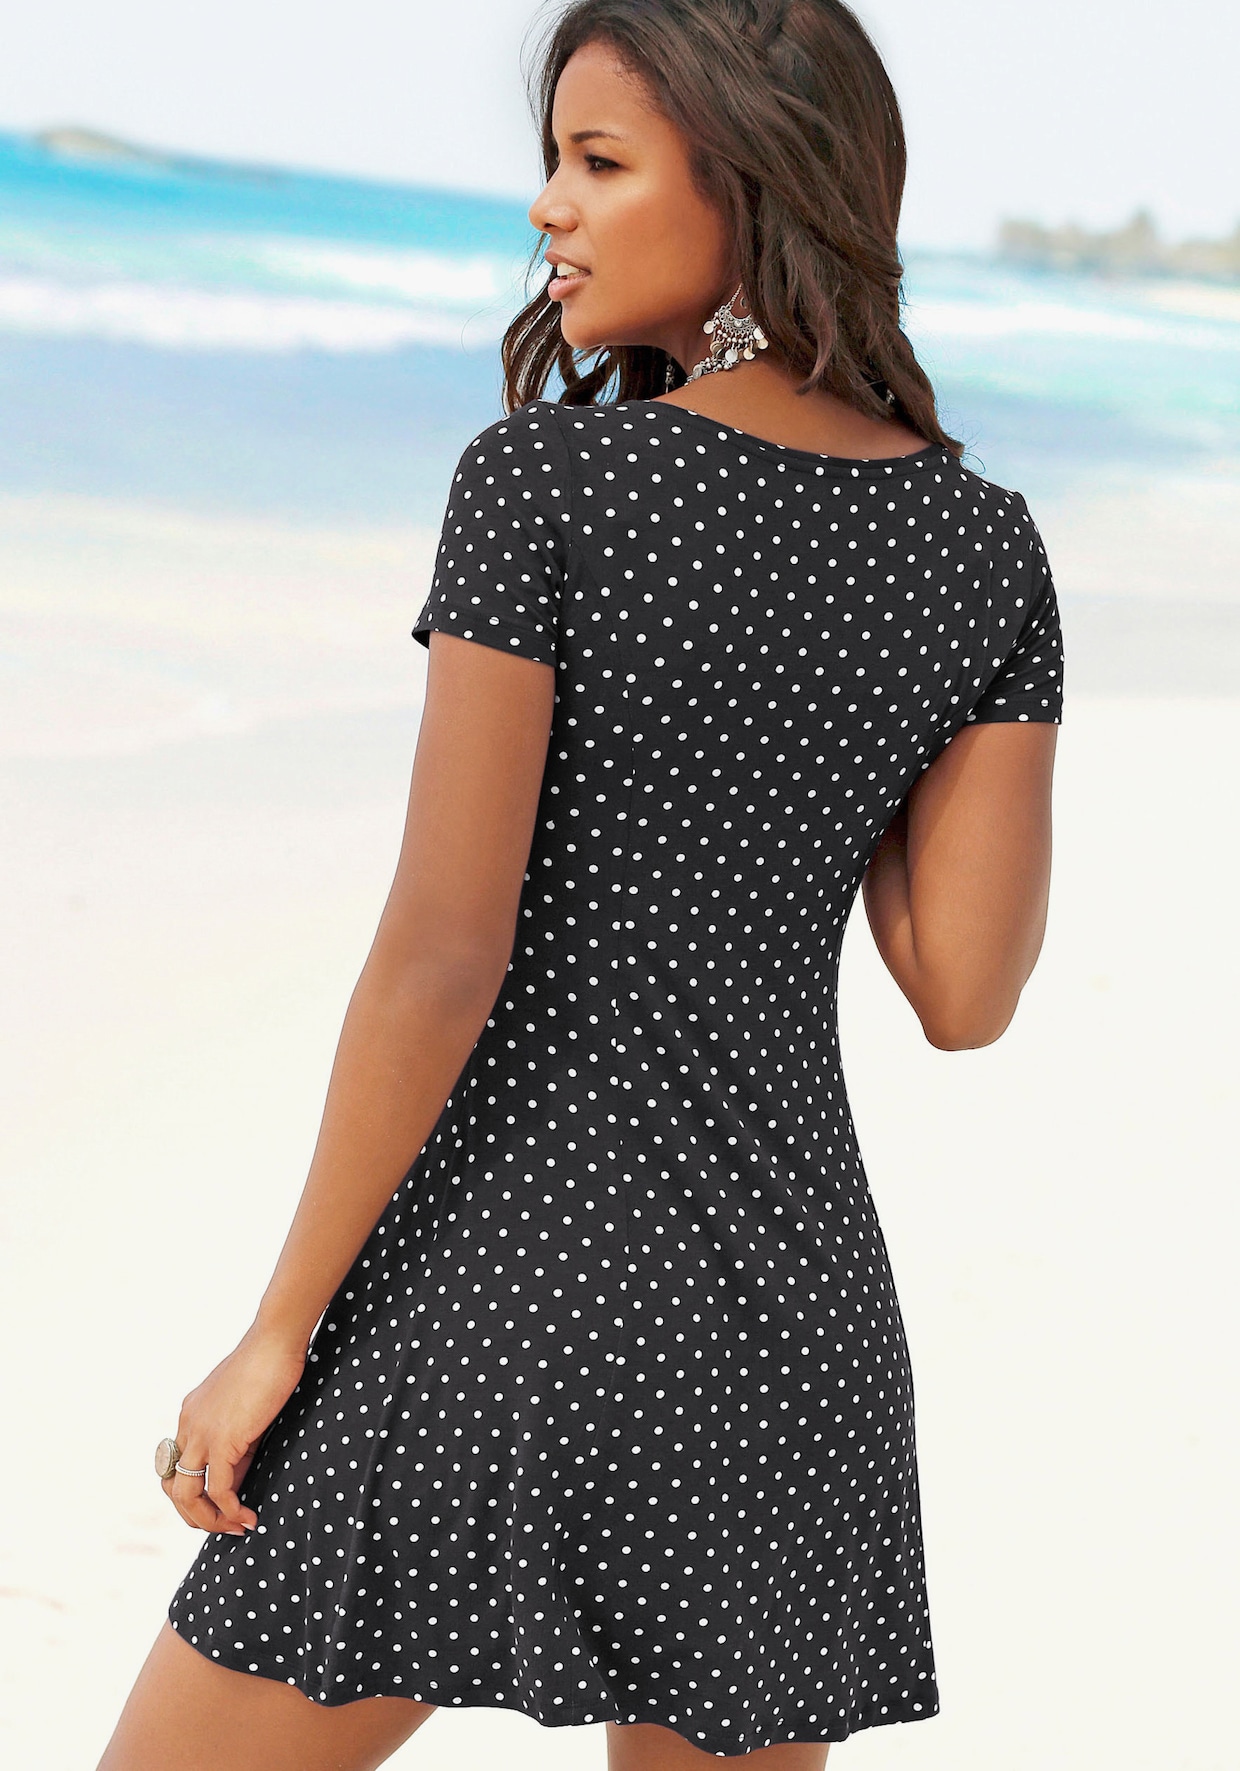 Beachtime Sommerkleid - schwarz-weiß-gepunktet